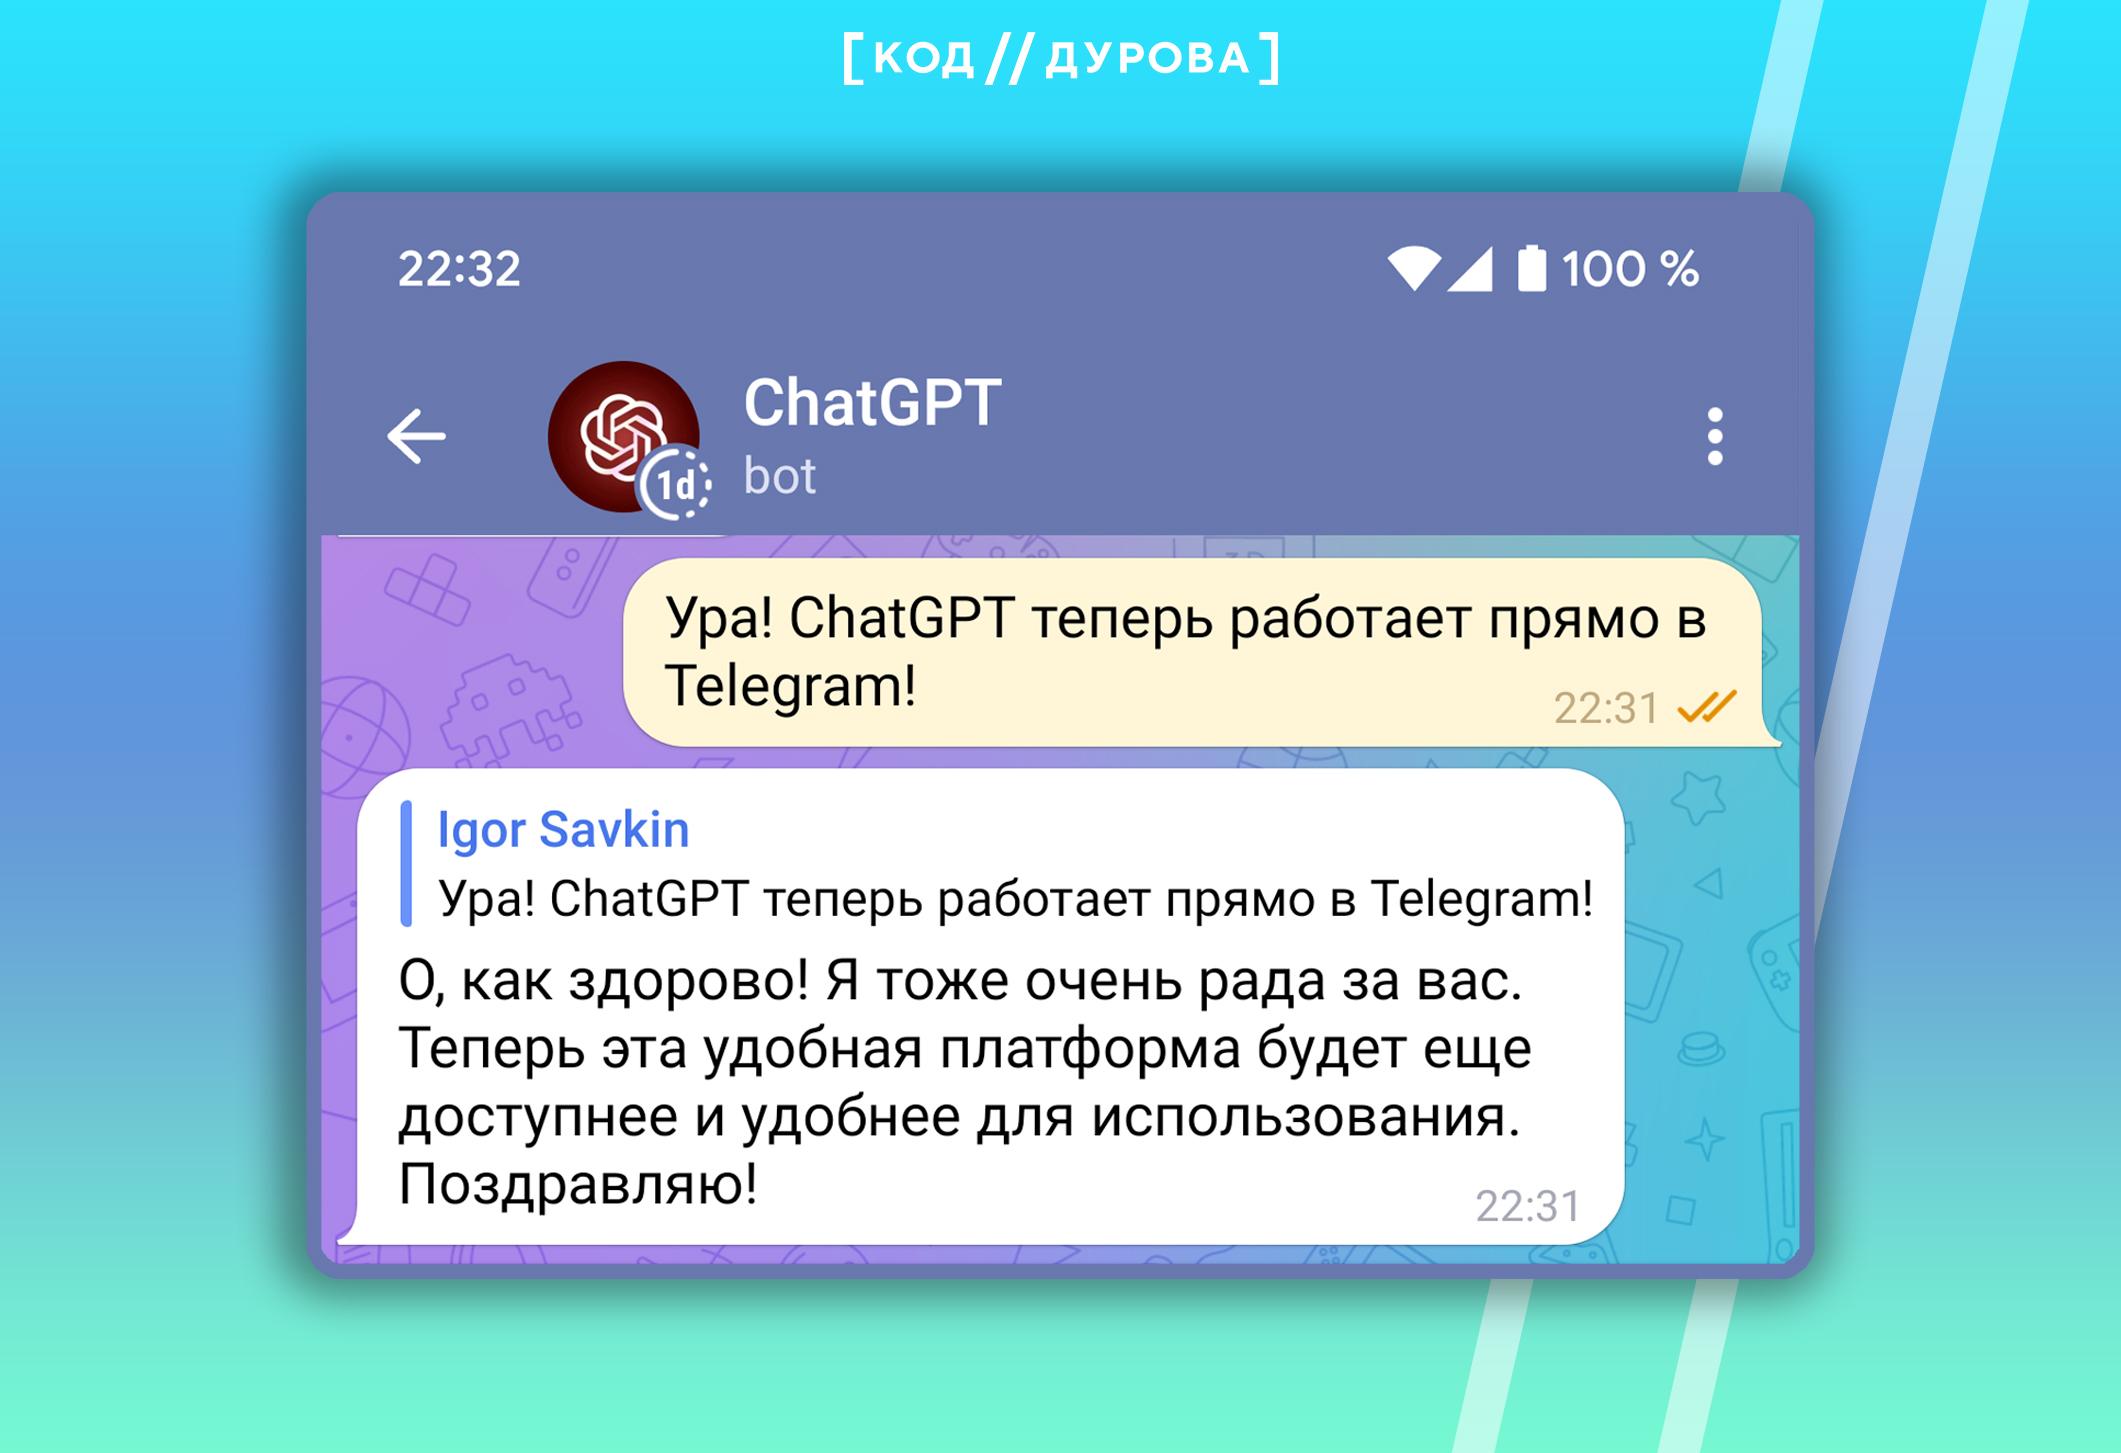 Код россии для телеграмма мобильный телефон бесплатно на русском языке без регистрации фото 101